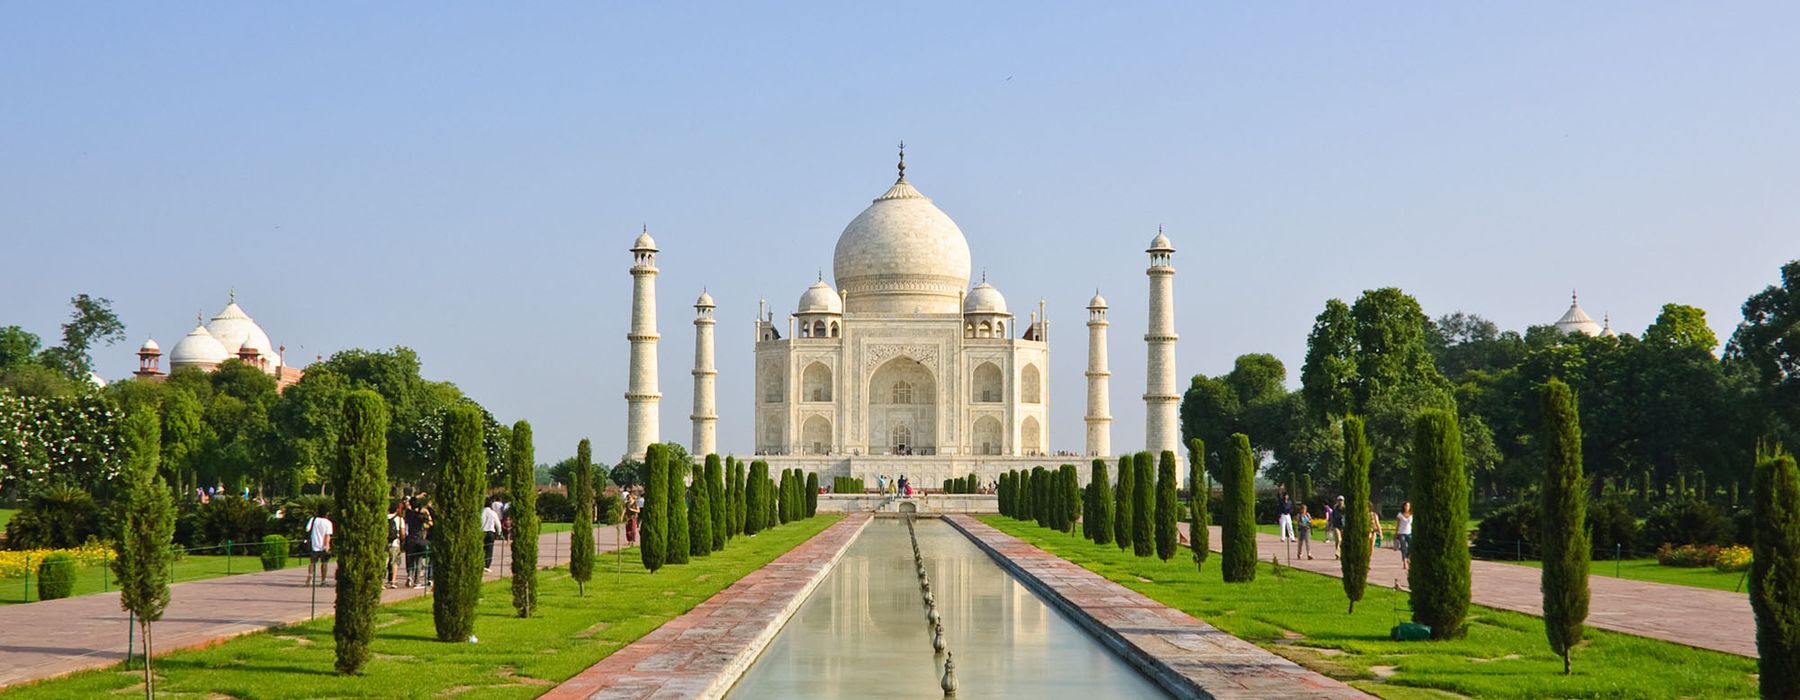 Weltkulturerbe in Asien - Taj Mahal